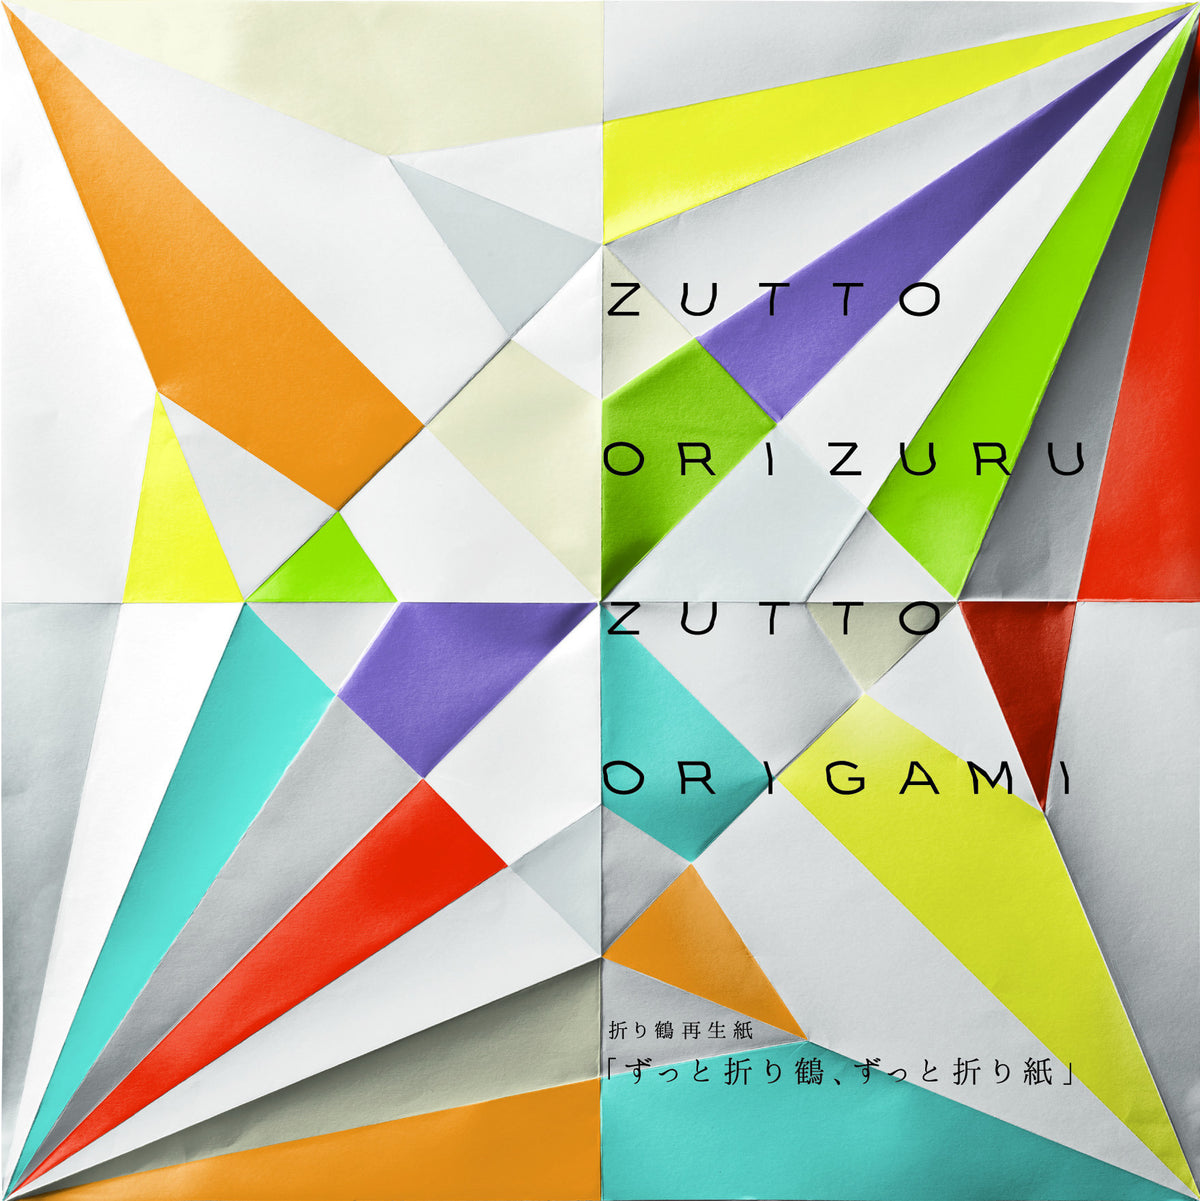 Zutto, Zutto Origami Project, Puzzle,